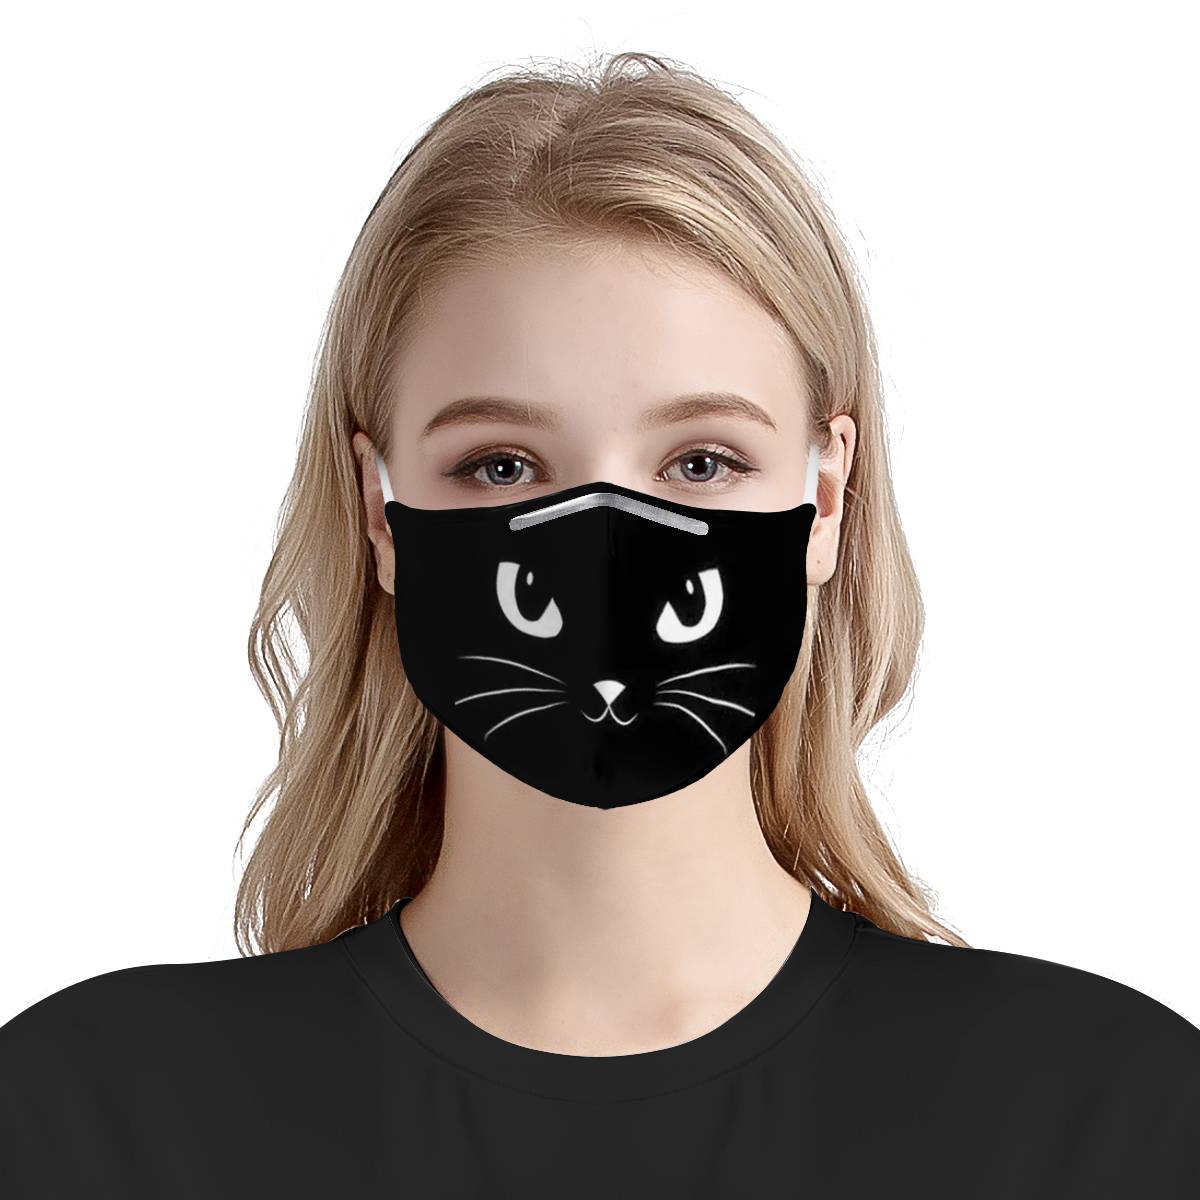 Masque chat noir